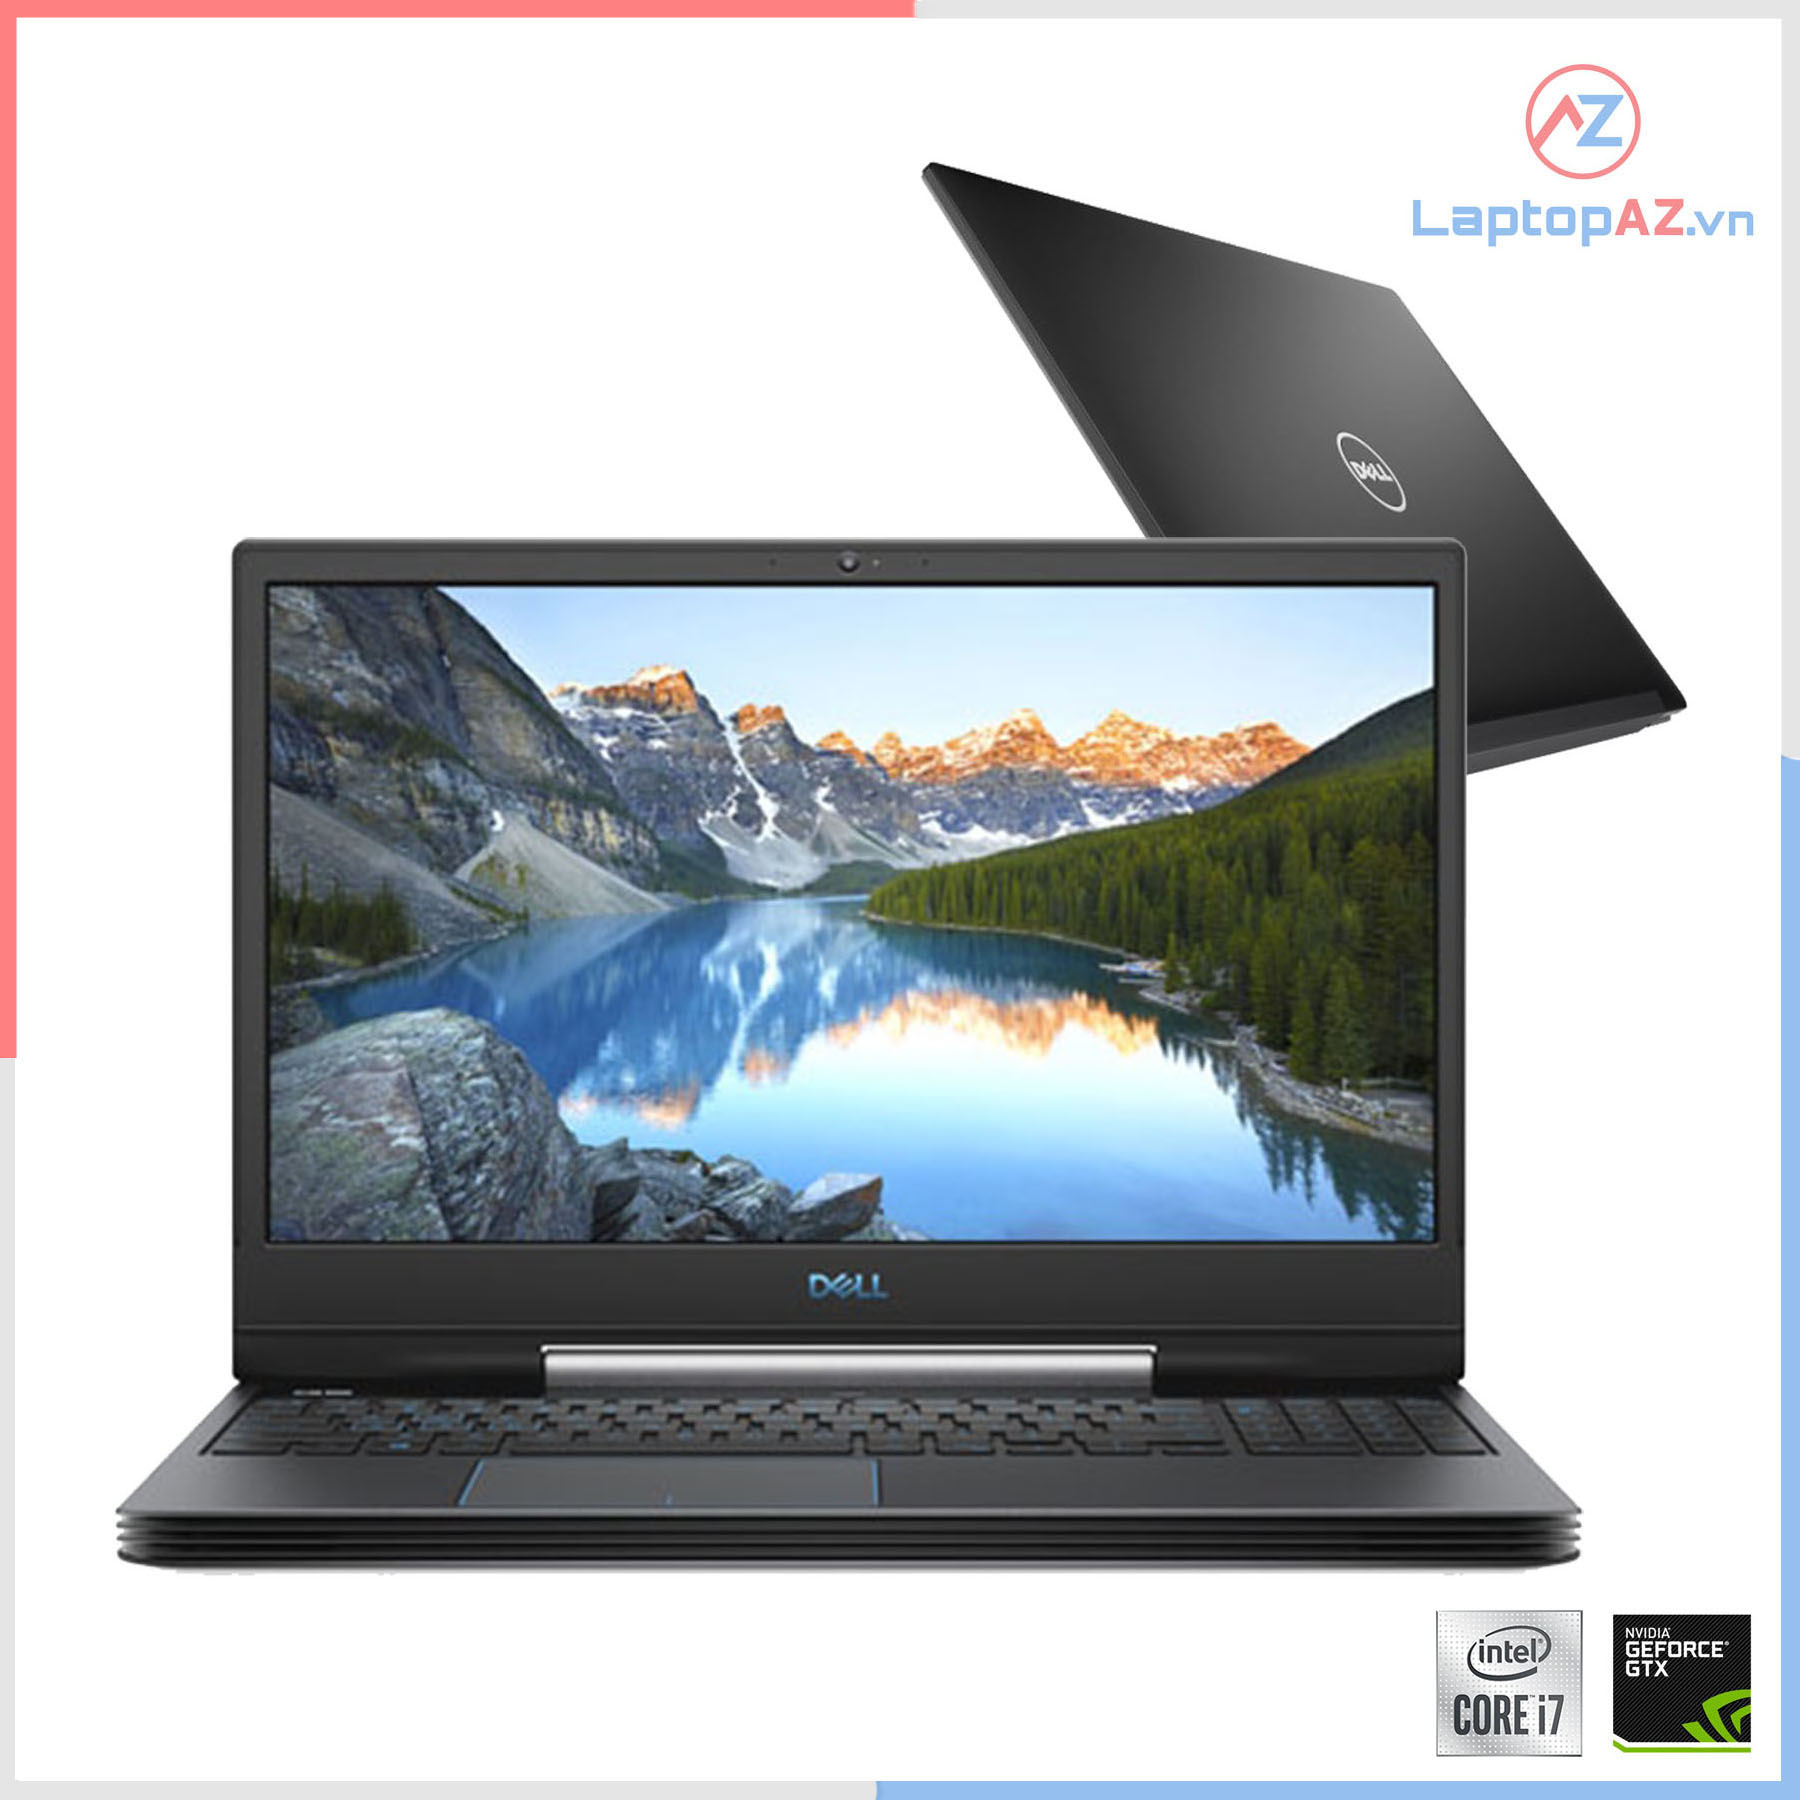 Laptop cũ Dell G5 15 5590 2019  i7-9750H, 8GB, 256GB, GTX 1660Ti, 15.6 FHD